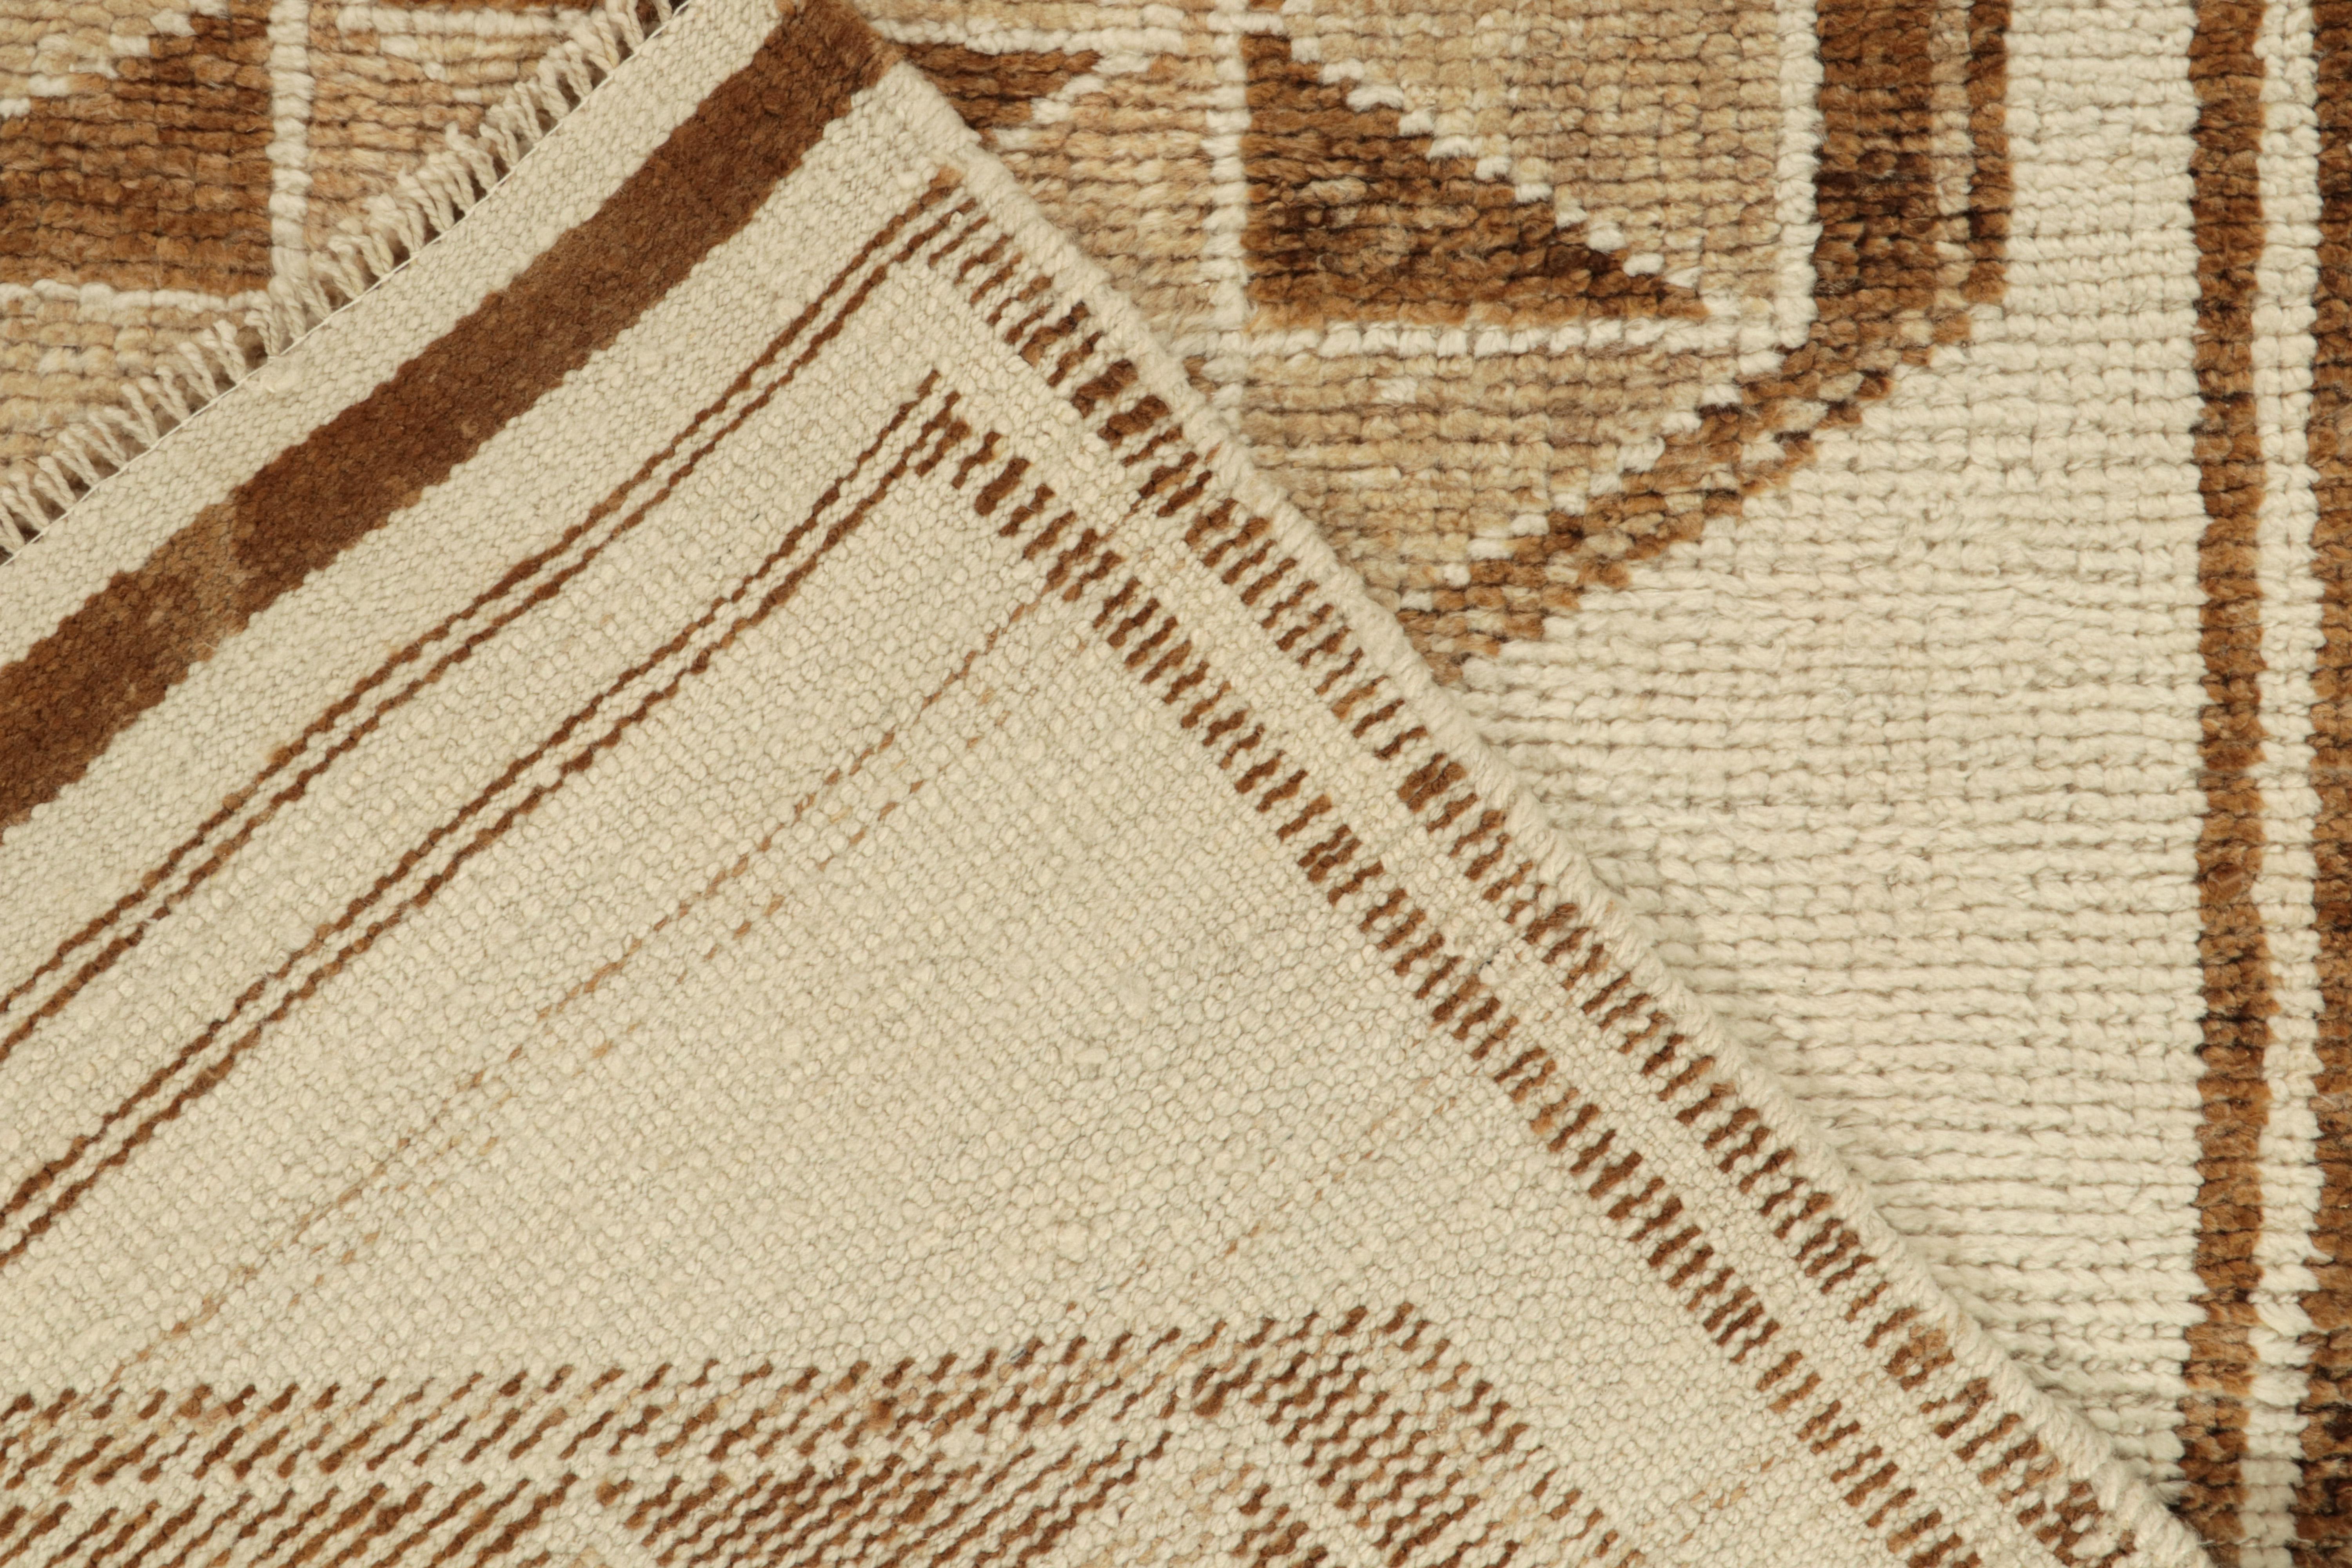 Wool Vintage Tribal Runner in Beige-Brown Geometric Patterns, Star by Rug & Kilim For Sale